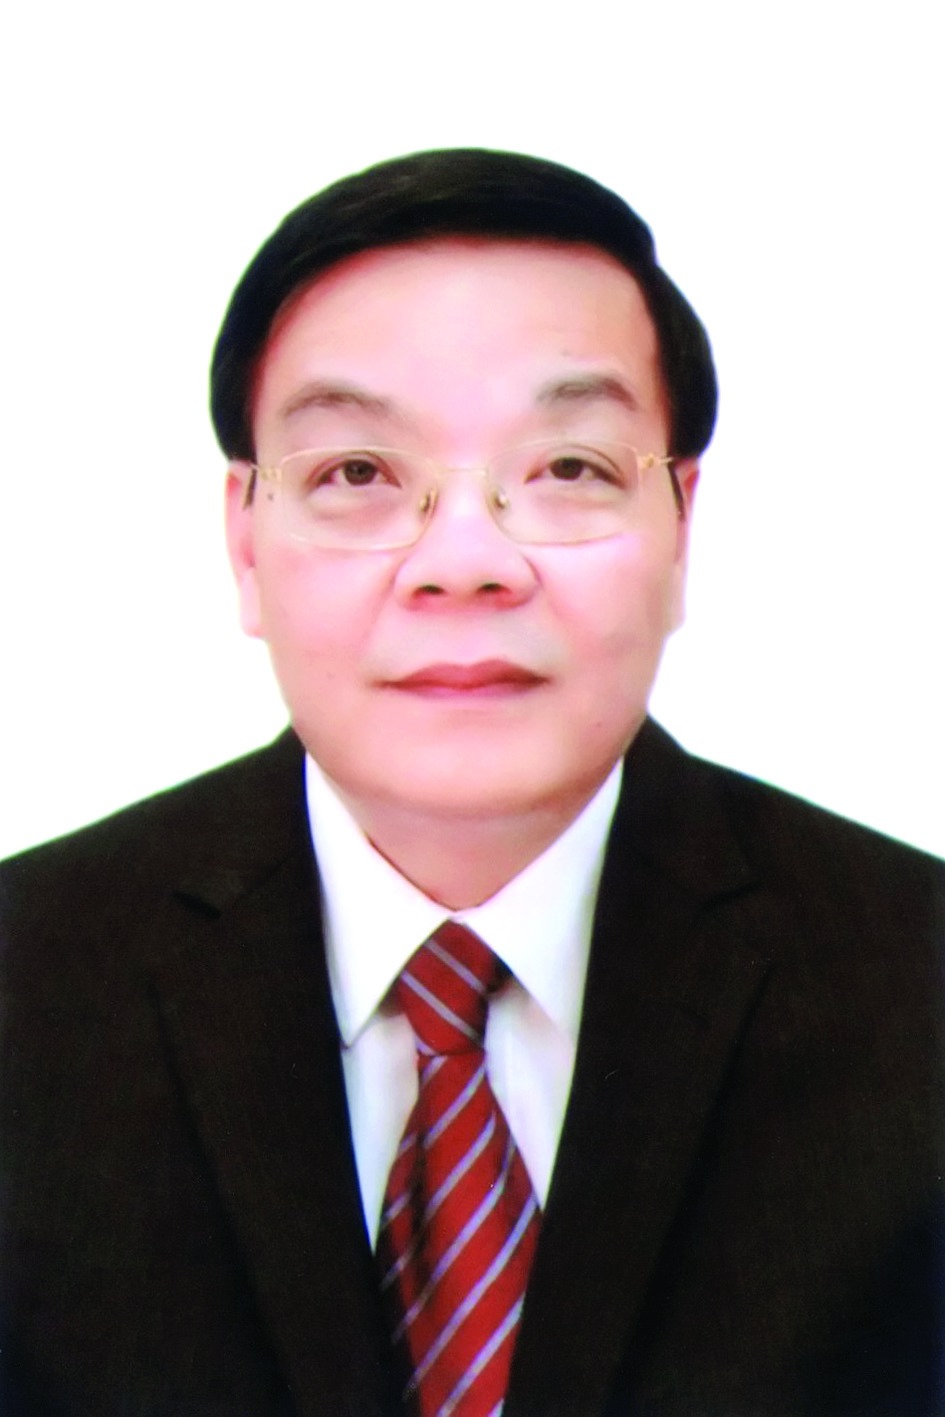 Chương trình hành động của Chủ tịch UBND TP Hà Nội Chu Ngọc Anh, ứng cử viên đại biểu HĐND TP Hà Nội nhiệm kỳ 2021 - 2026 - Ảnh 1